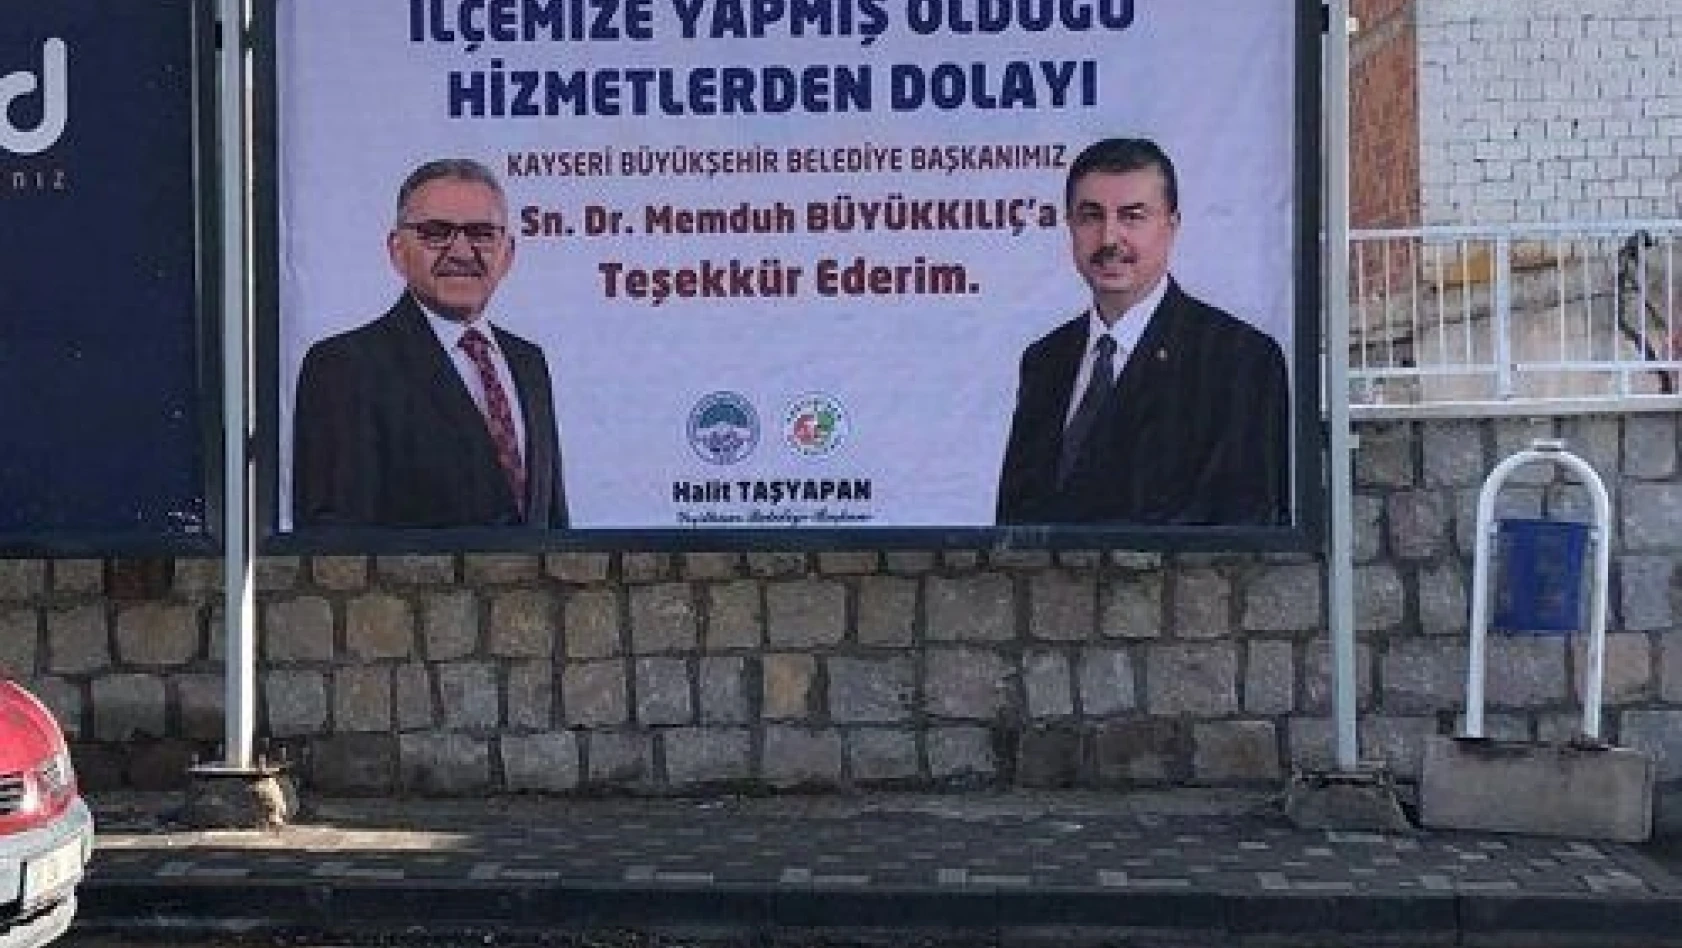 Başkan Büyükkılıç'a Yeşilhisar Belediye Başkanı Taşyapan'dan teşekkür